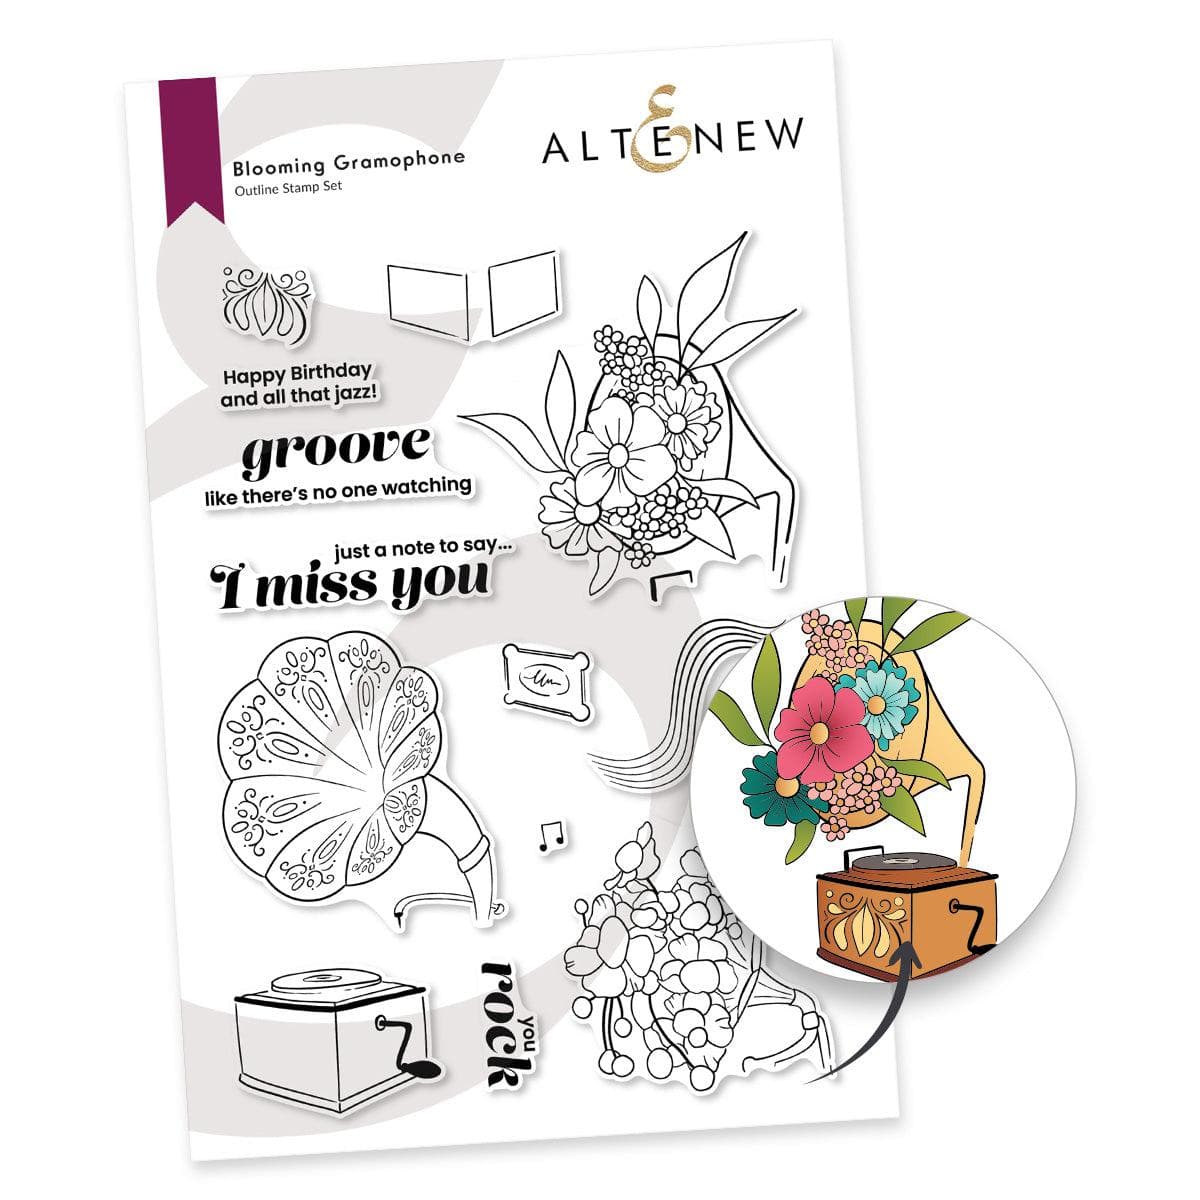 Altenew Stamp & Die Bundle Blooming Gramophone Complete Bundle